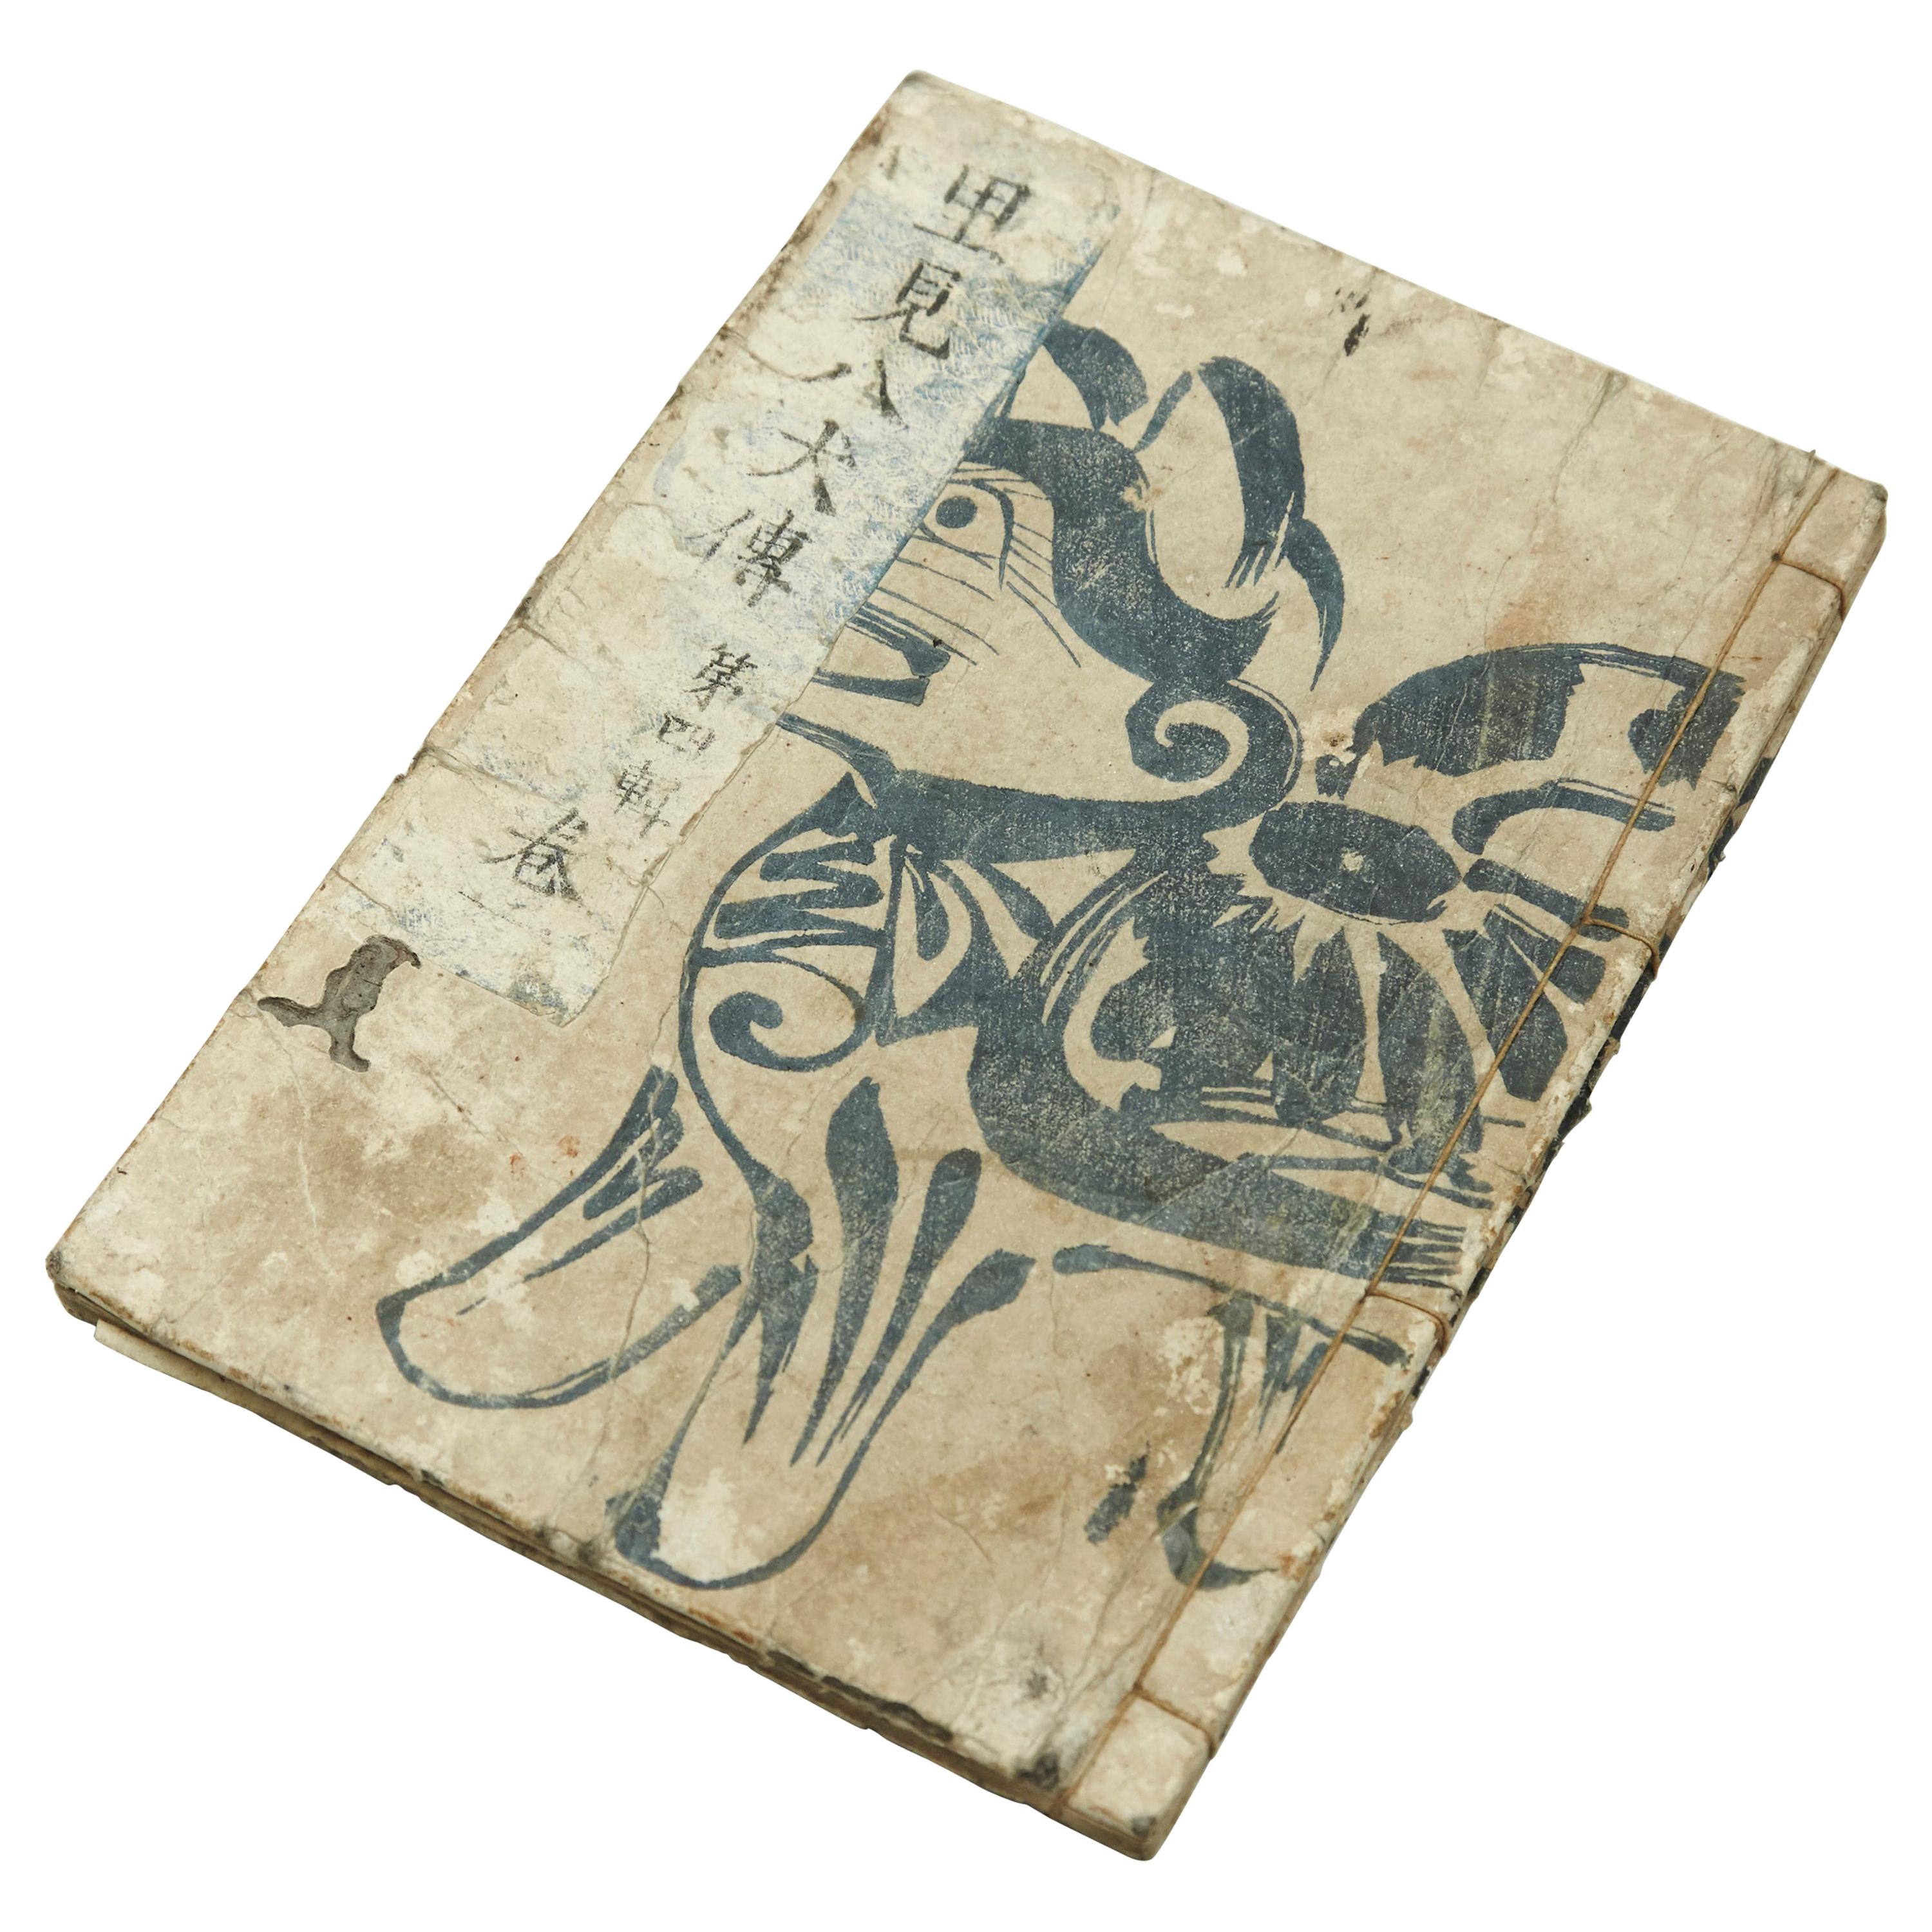 Antique Japanese Epic Novel Book Edo Period, circa 1820